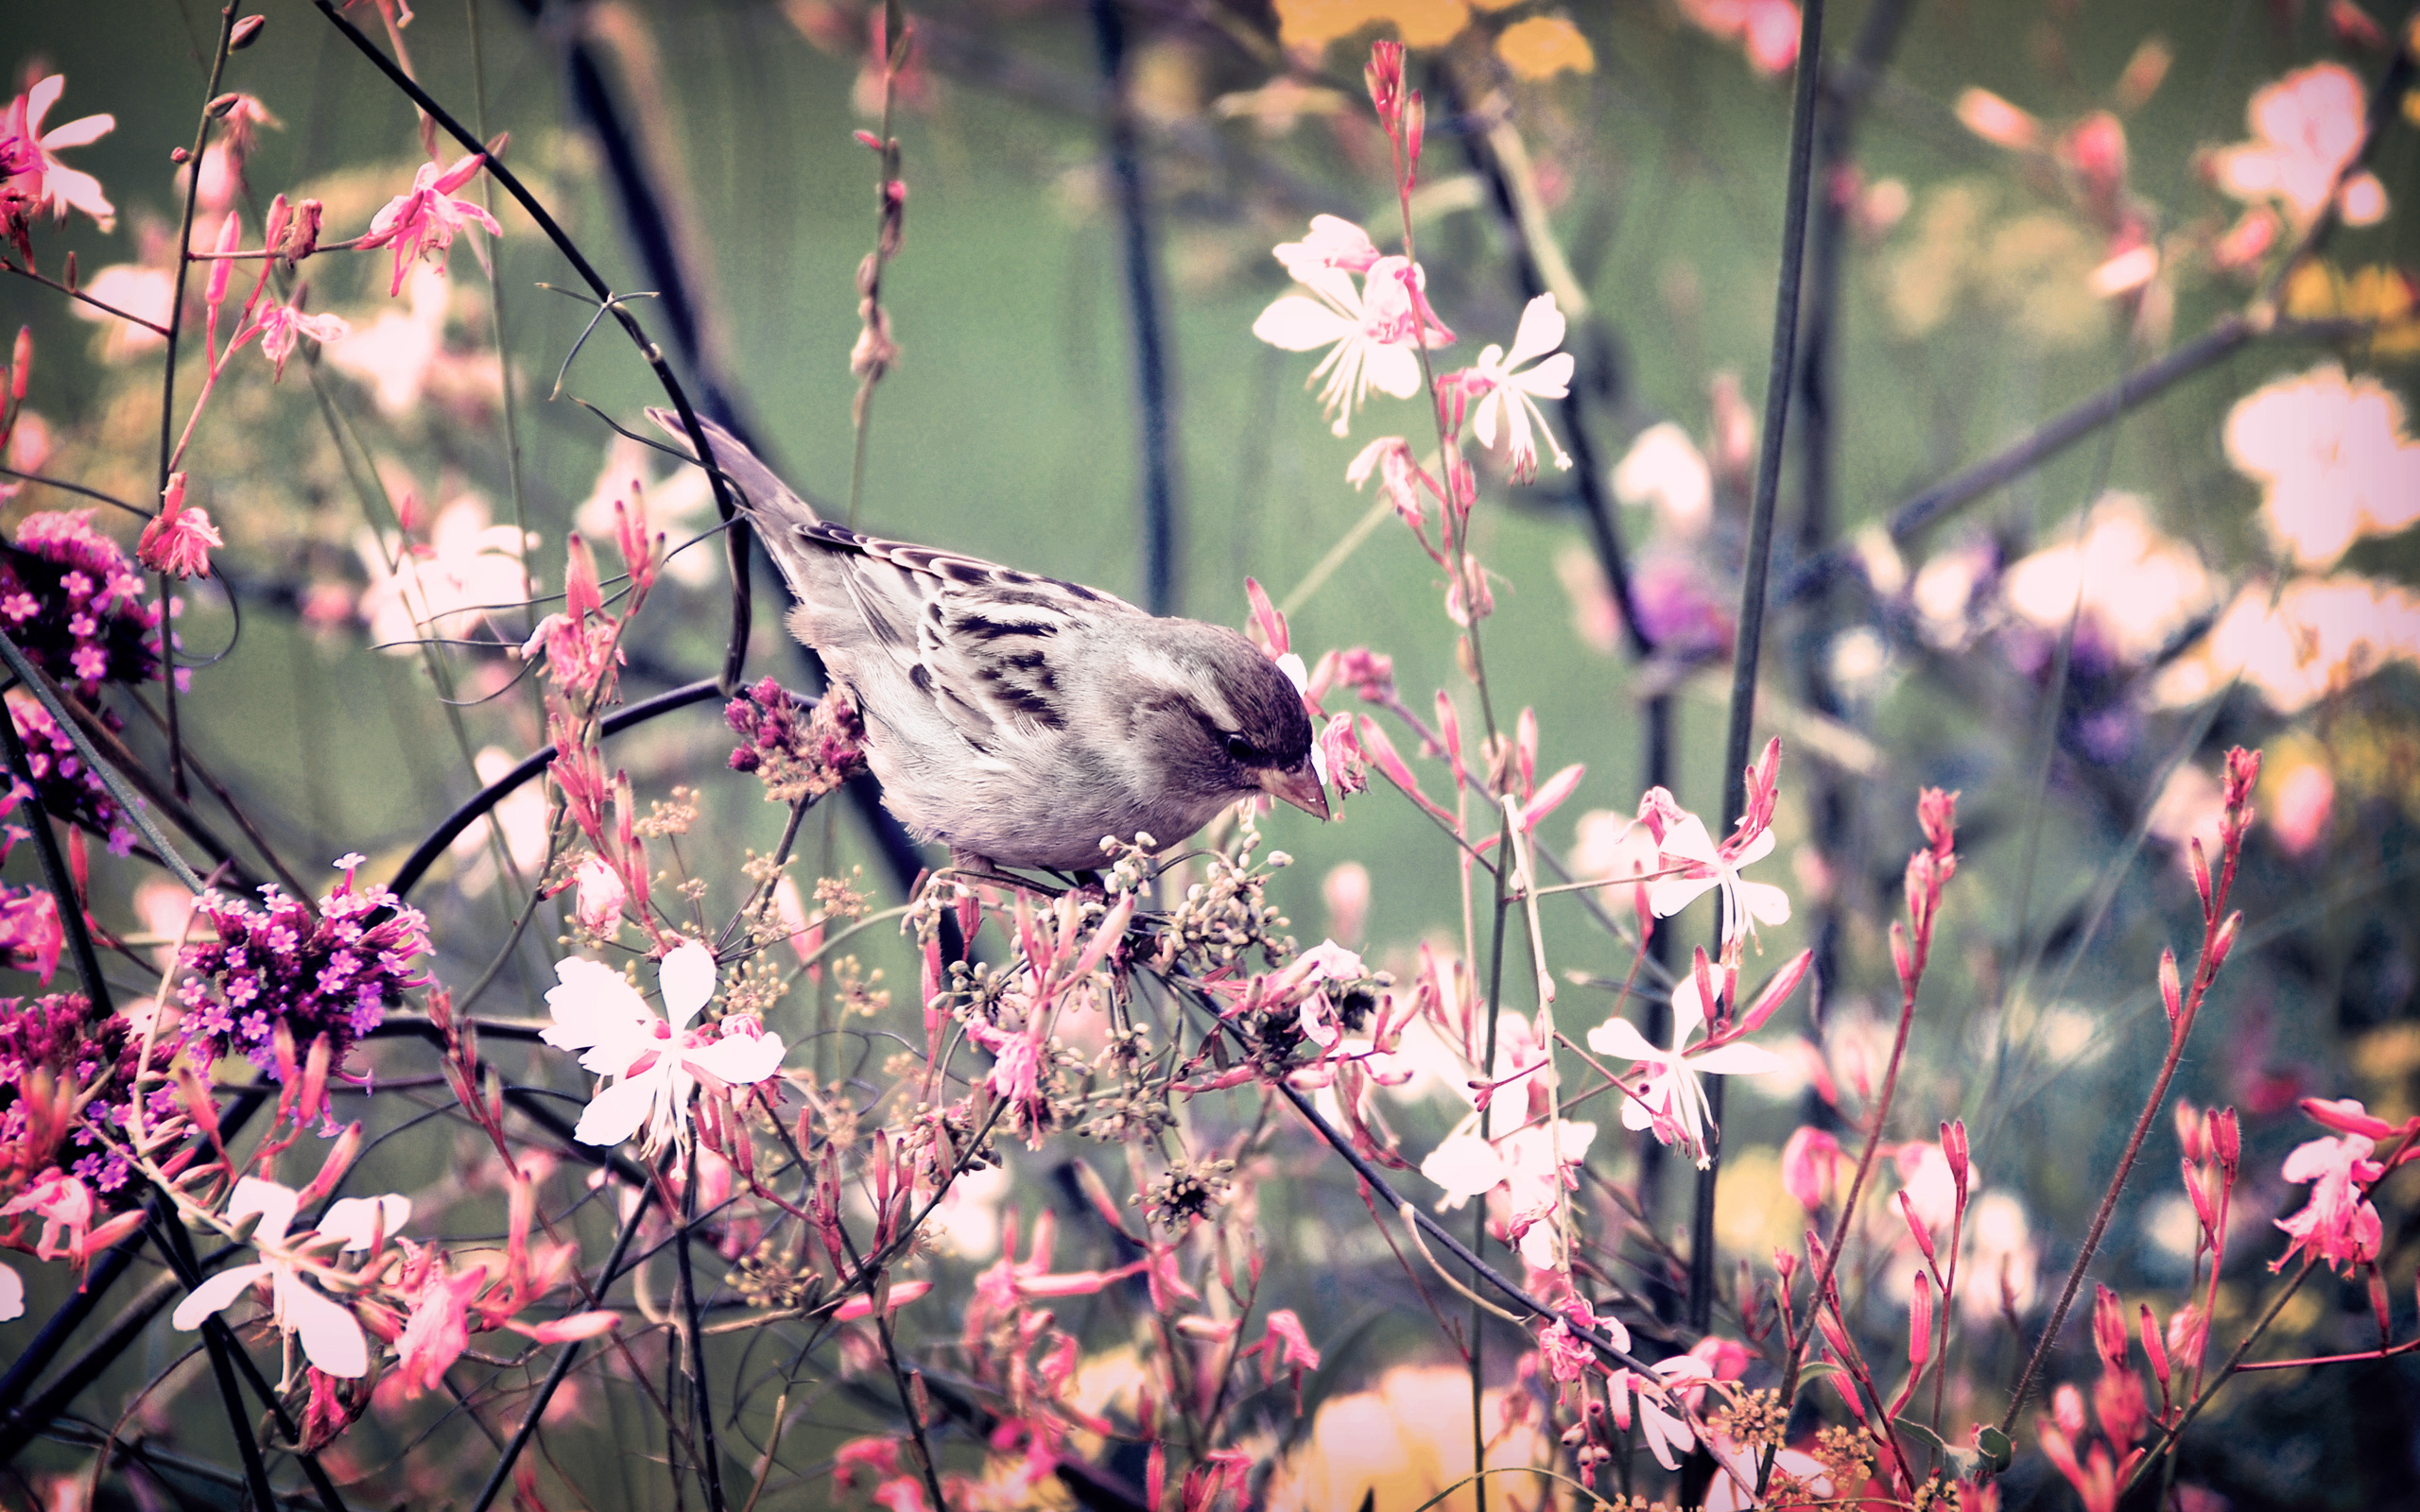 Звонкая птичья трель зазвучала в саду. Весенняя природа. Весенние птички. Птицы в весеннем саду.